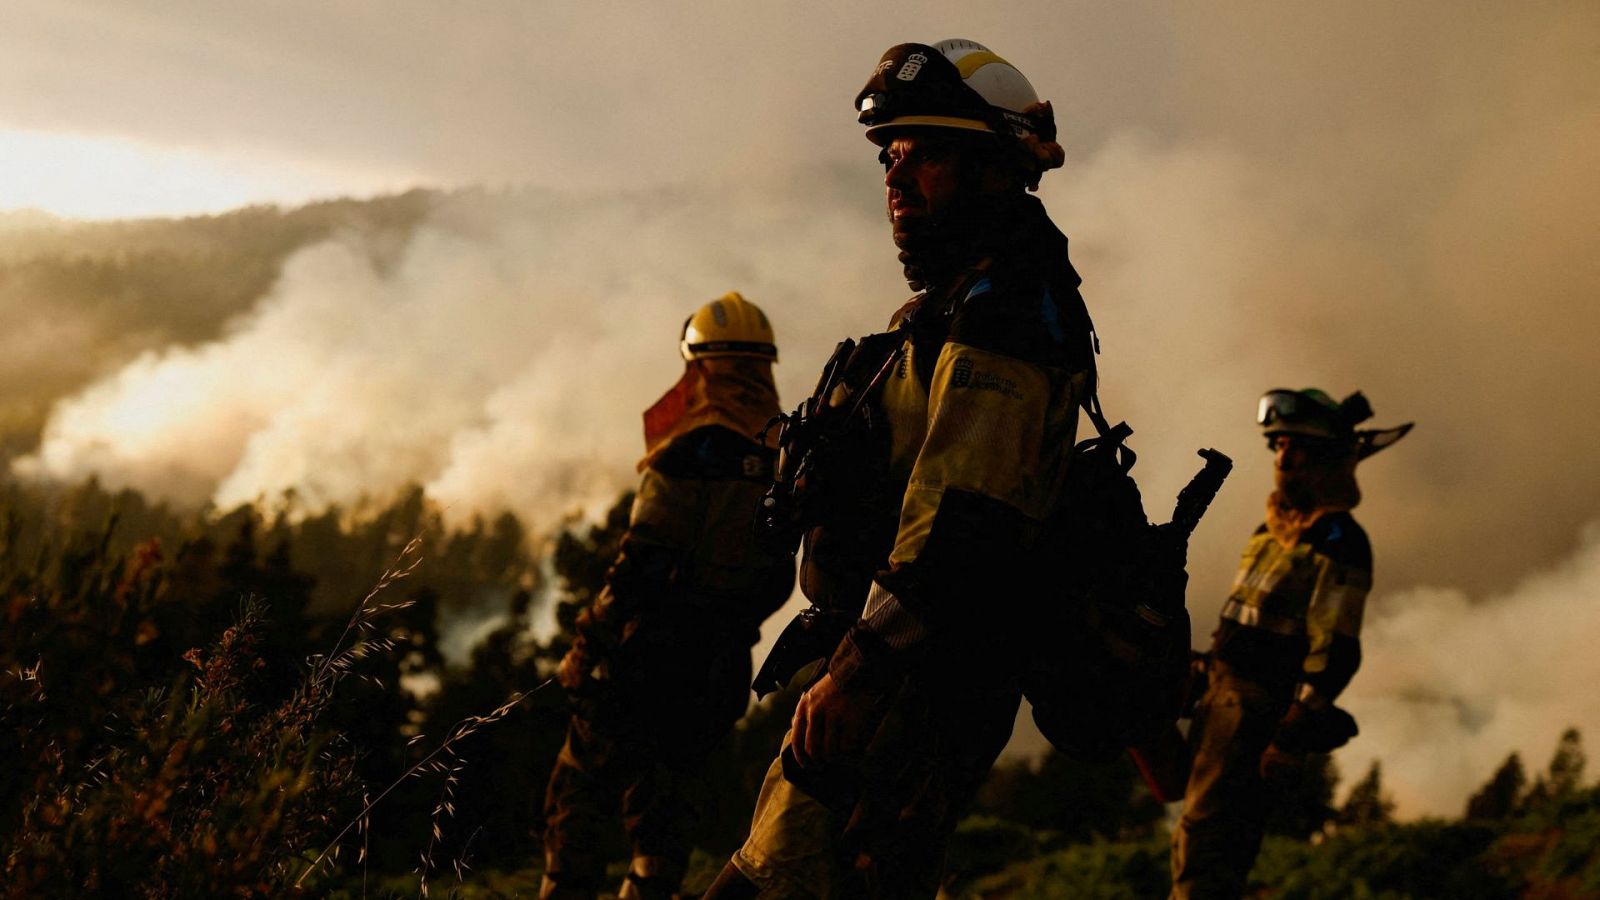 Incendio fuera de control en La Palma: casi 3.500 hectáreas arrasadas y más de 4.000 evacuados - Ver ahora